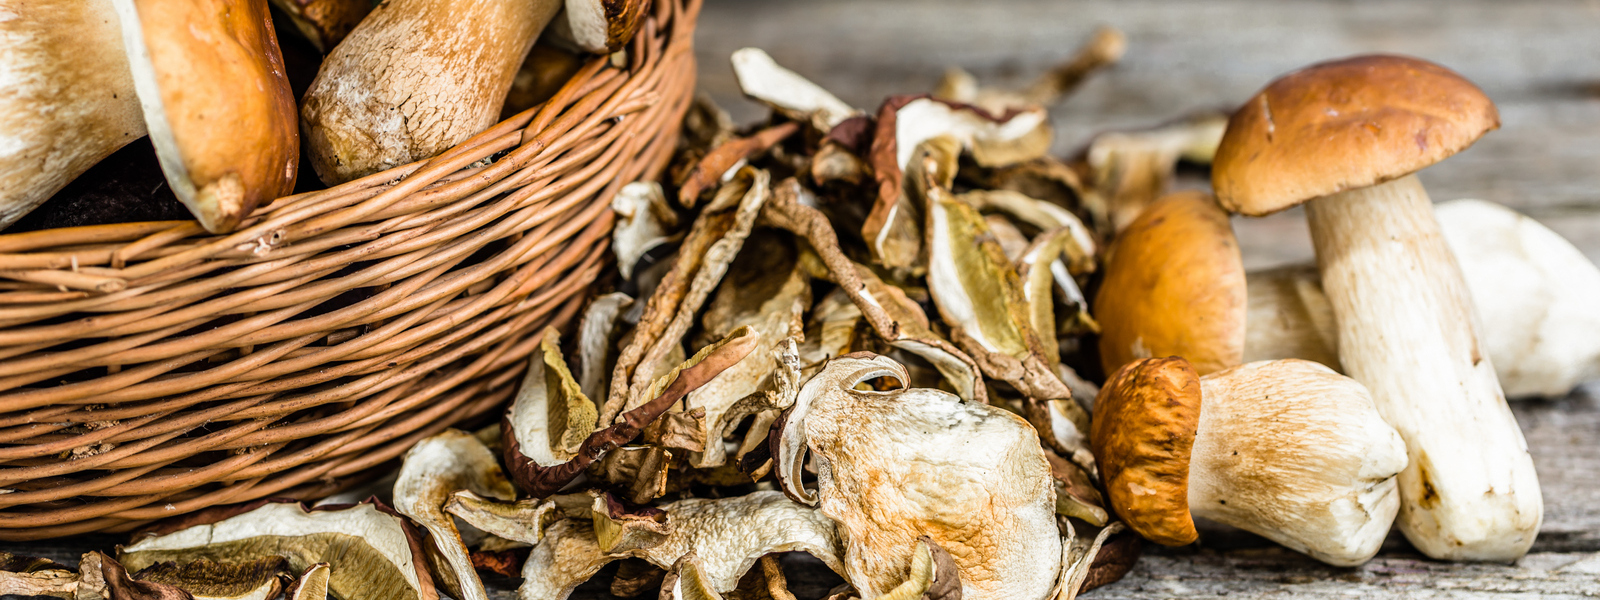 Voňavé zásoby na celý rok: Jak sušit houby a jak je uchovávat?